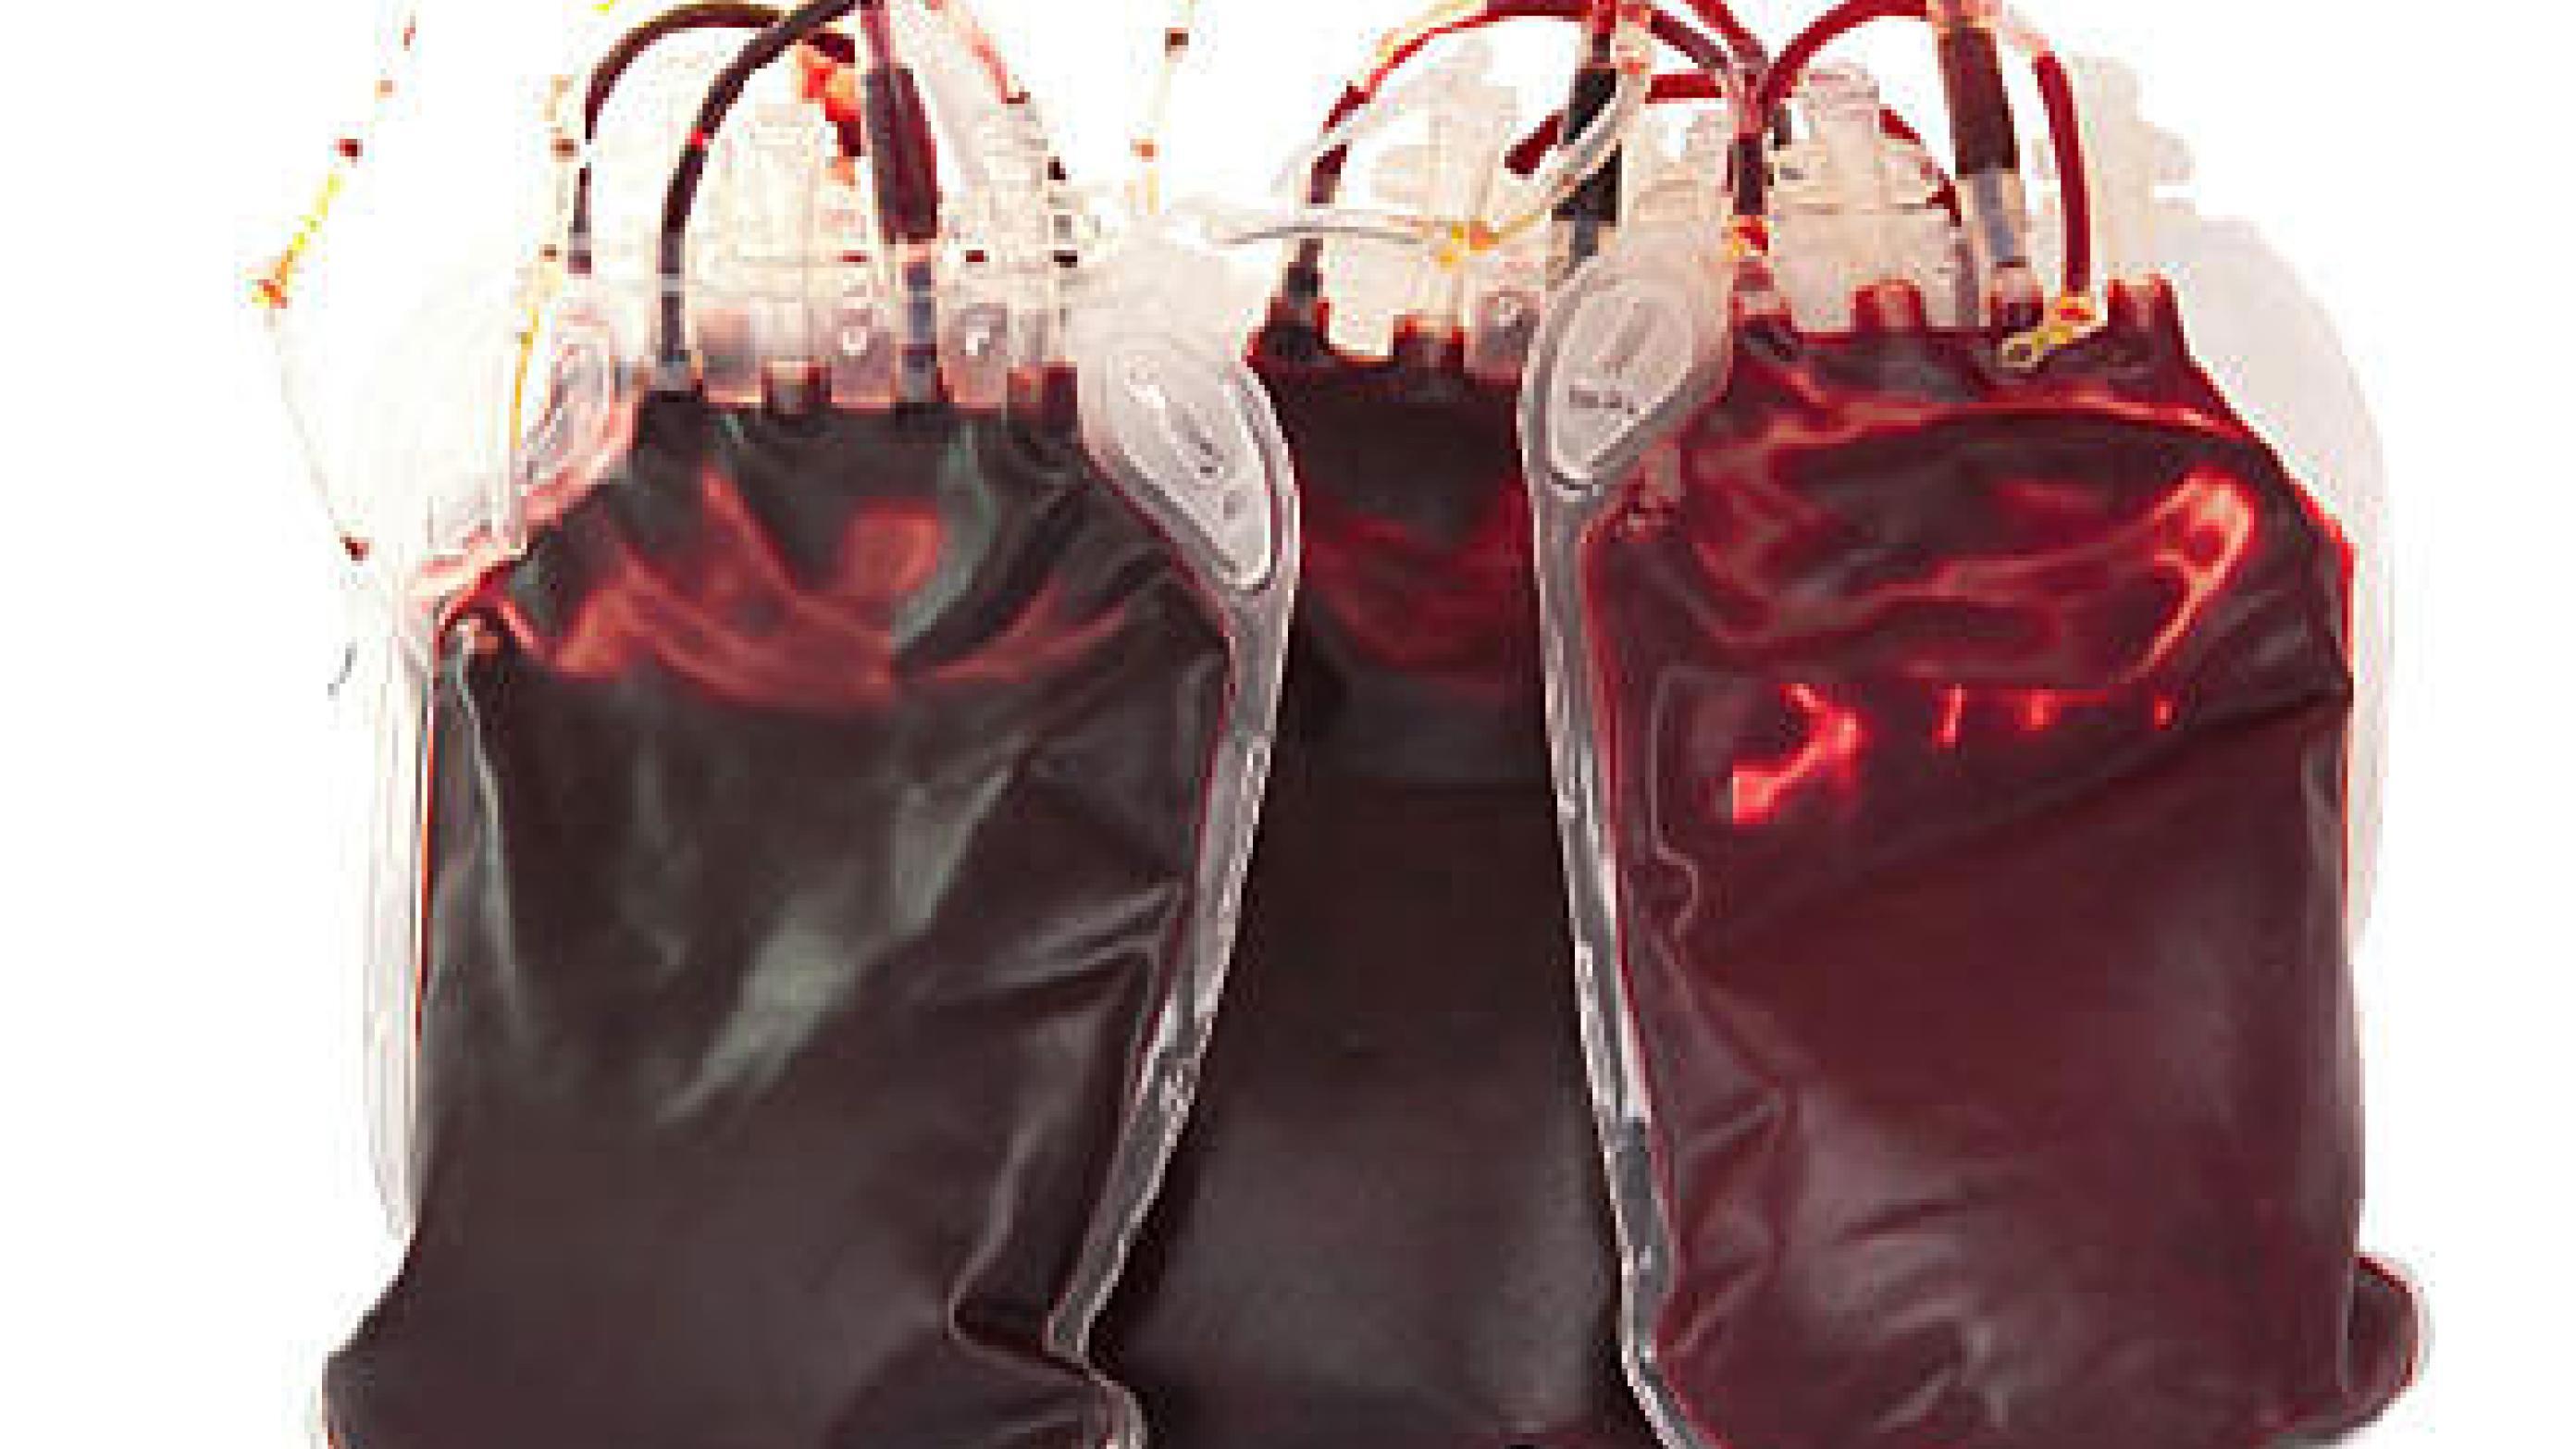 Røde donorblodceller i pose.